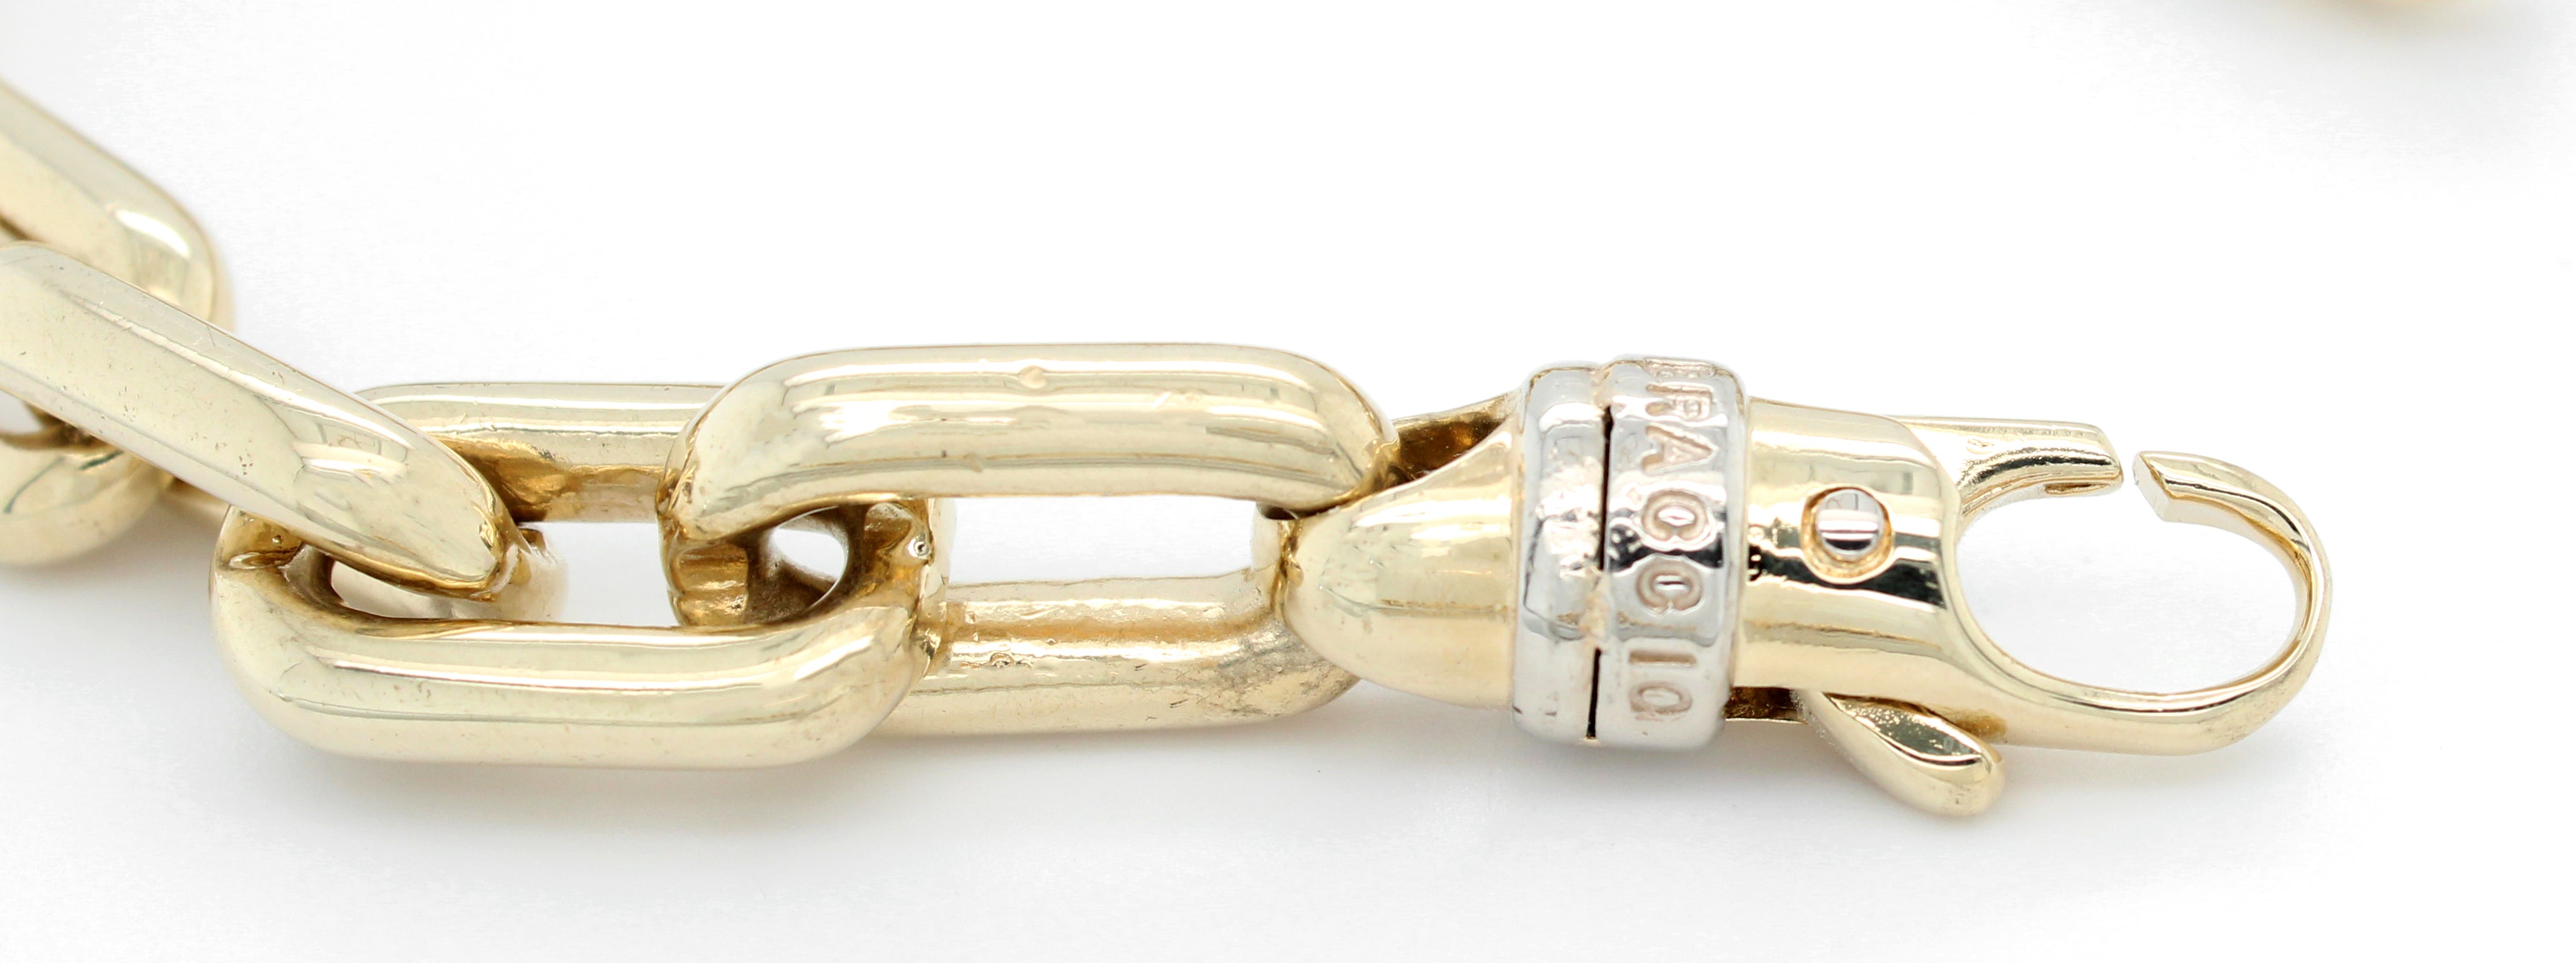 Gold Cable Link Bracelet